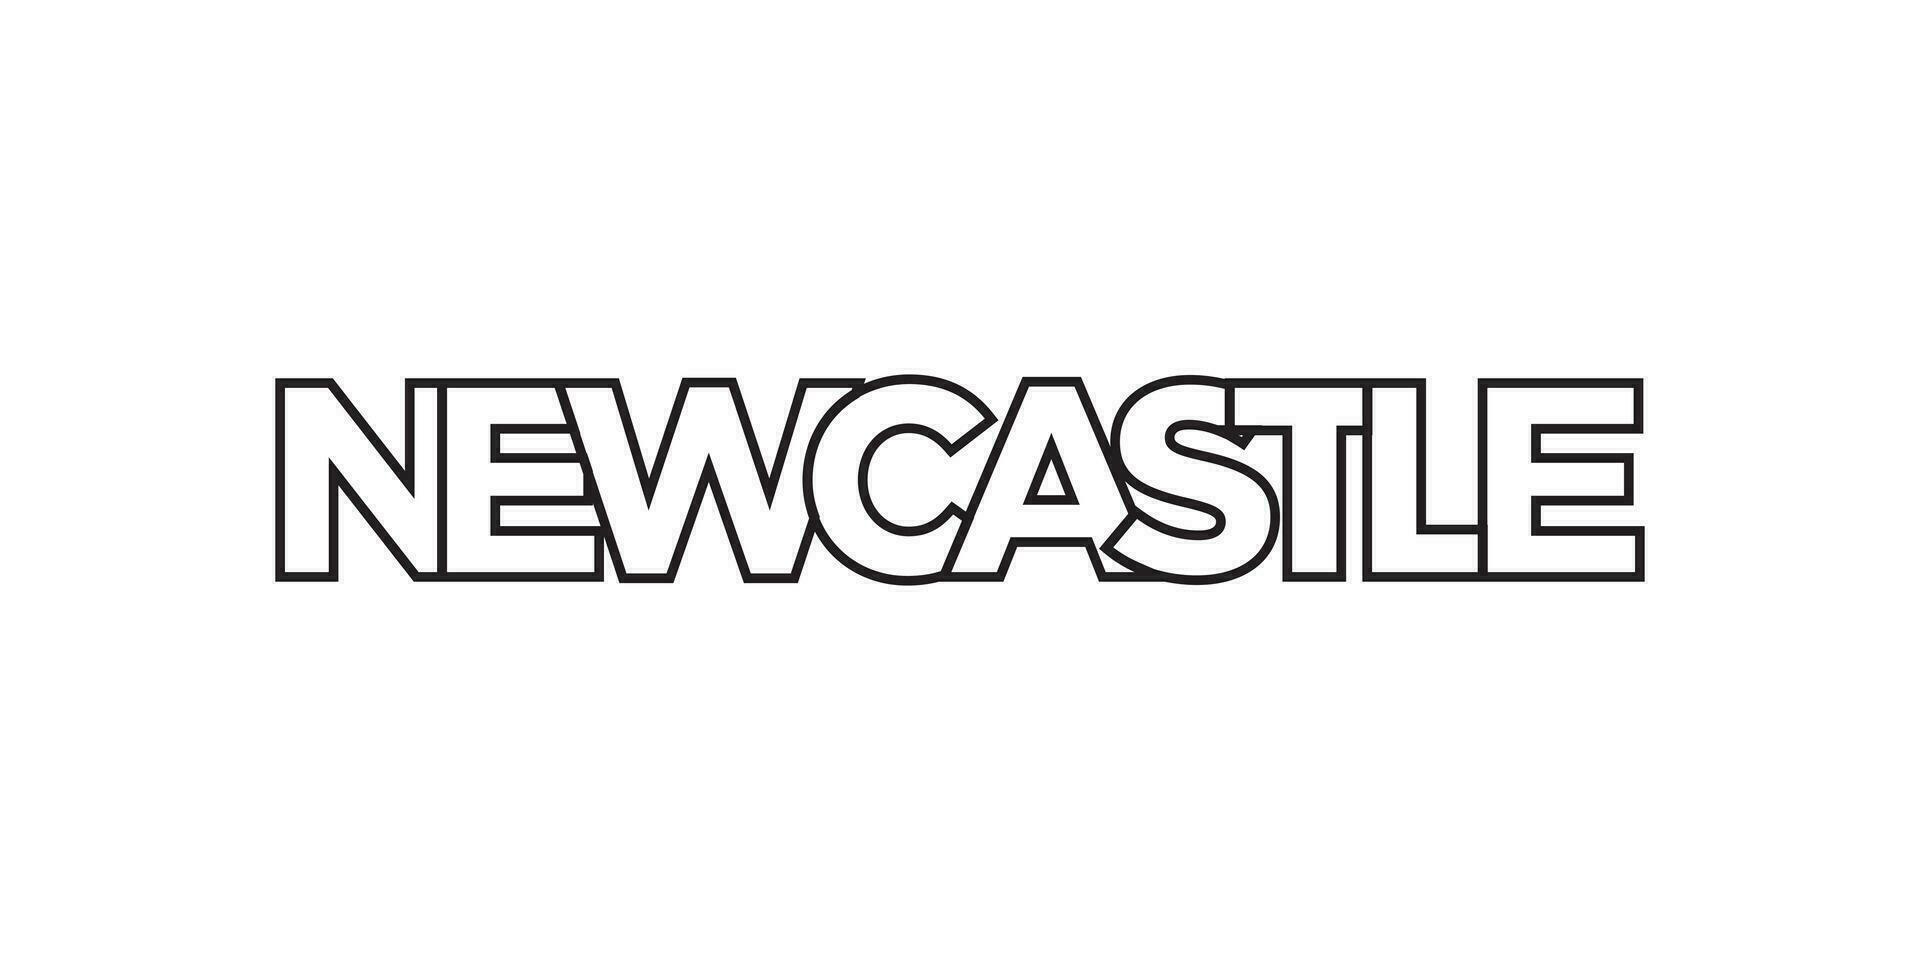 Newcastle in de zuiden Afrika embleem. de ontwerp Kenmerken een meetkundig stijl, vector illustratie met stoutmoedig typografie in een modern lettertype. de grafisch leuze belettering.